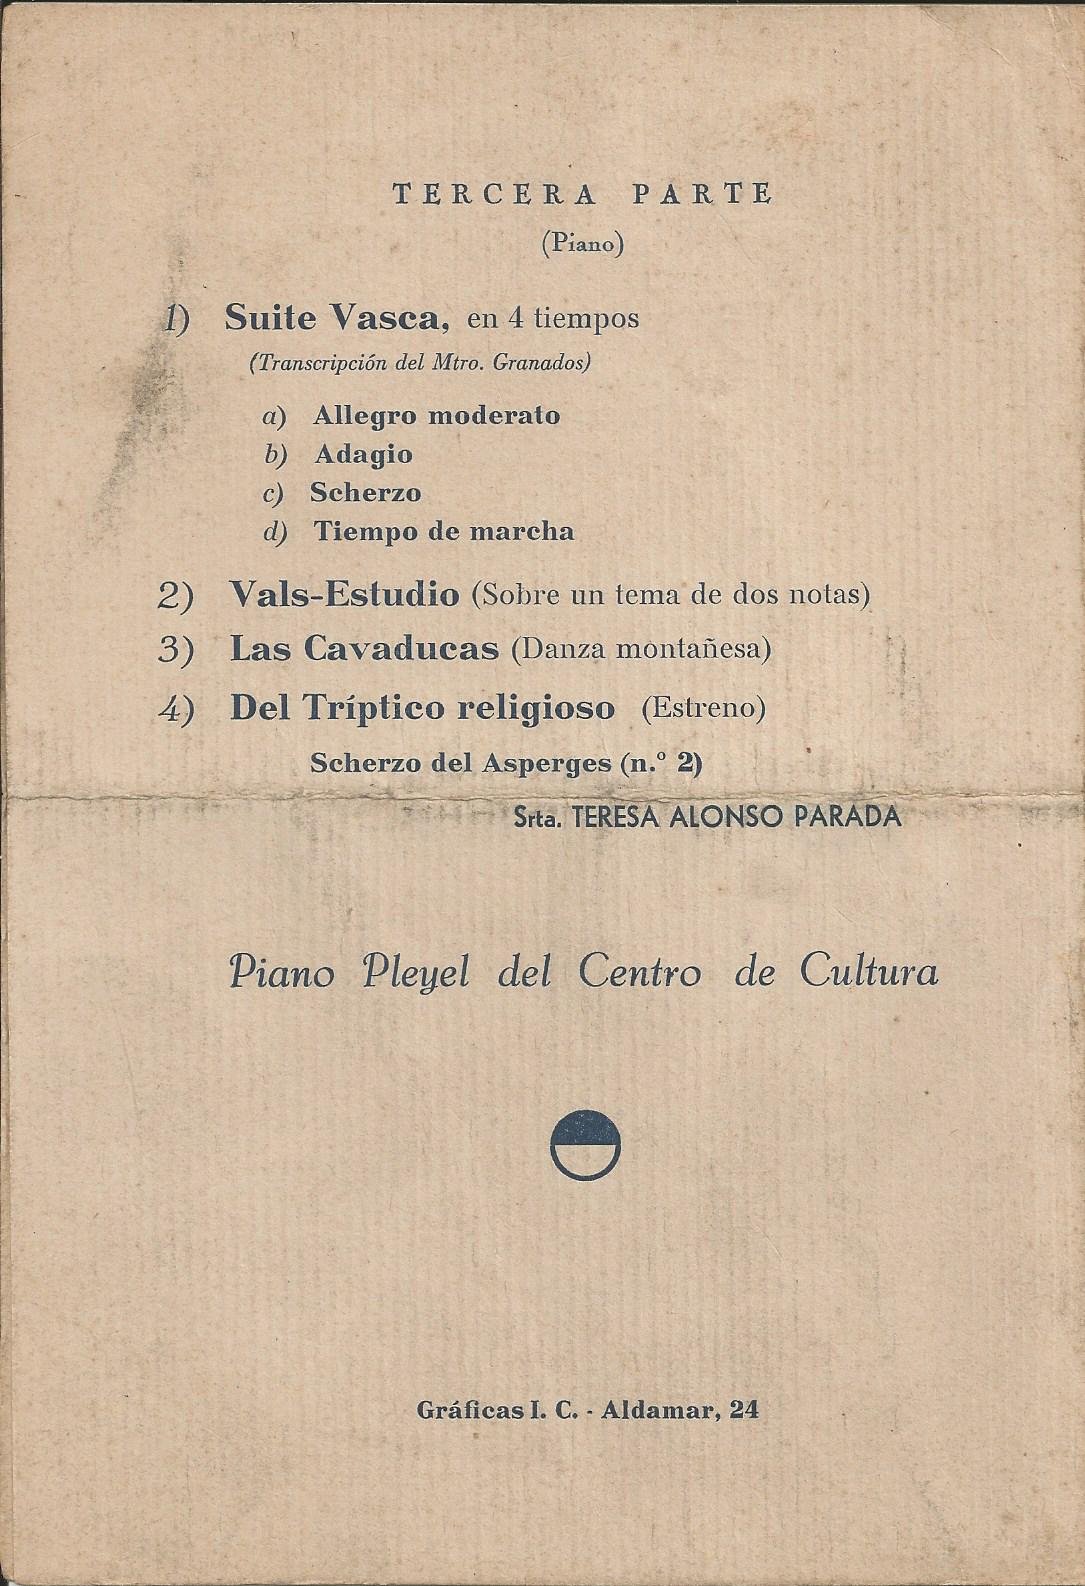 Nemesio Otaño - Programa de concierto del 6 de Junio de 1935 - Página 4 de 4